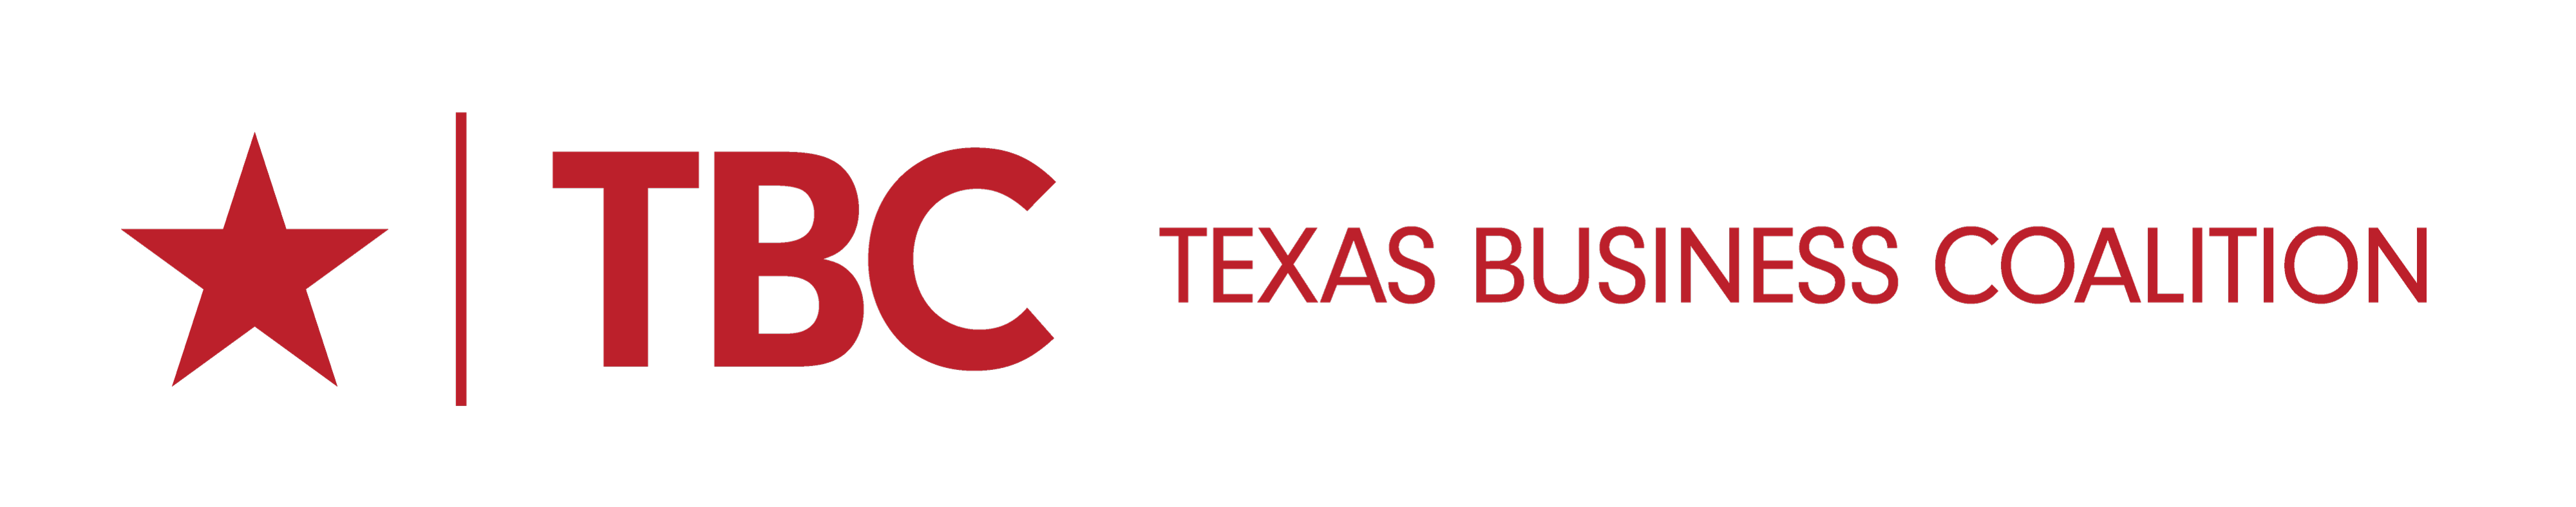 Texas Business Coalition logo